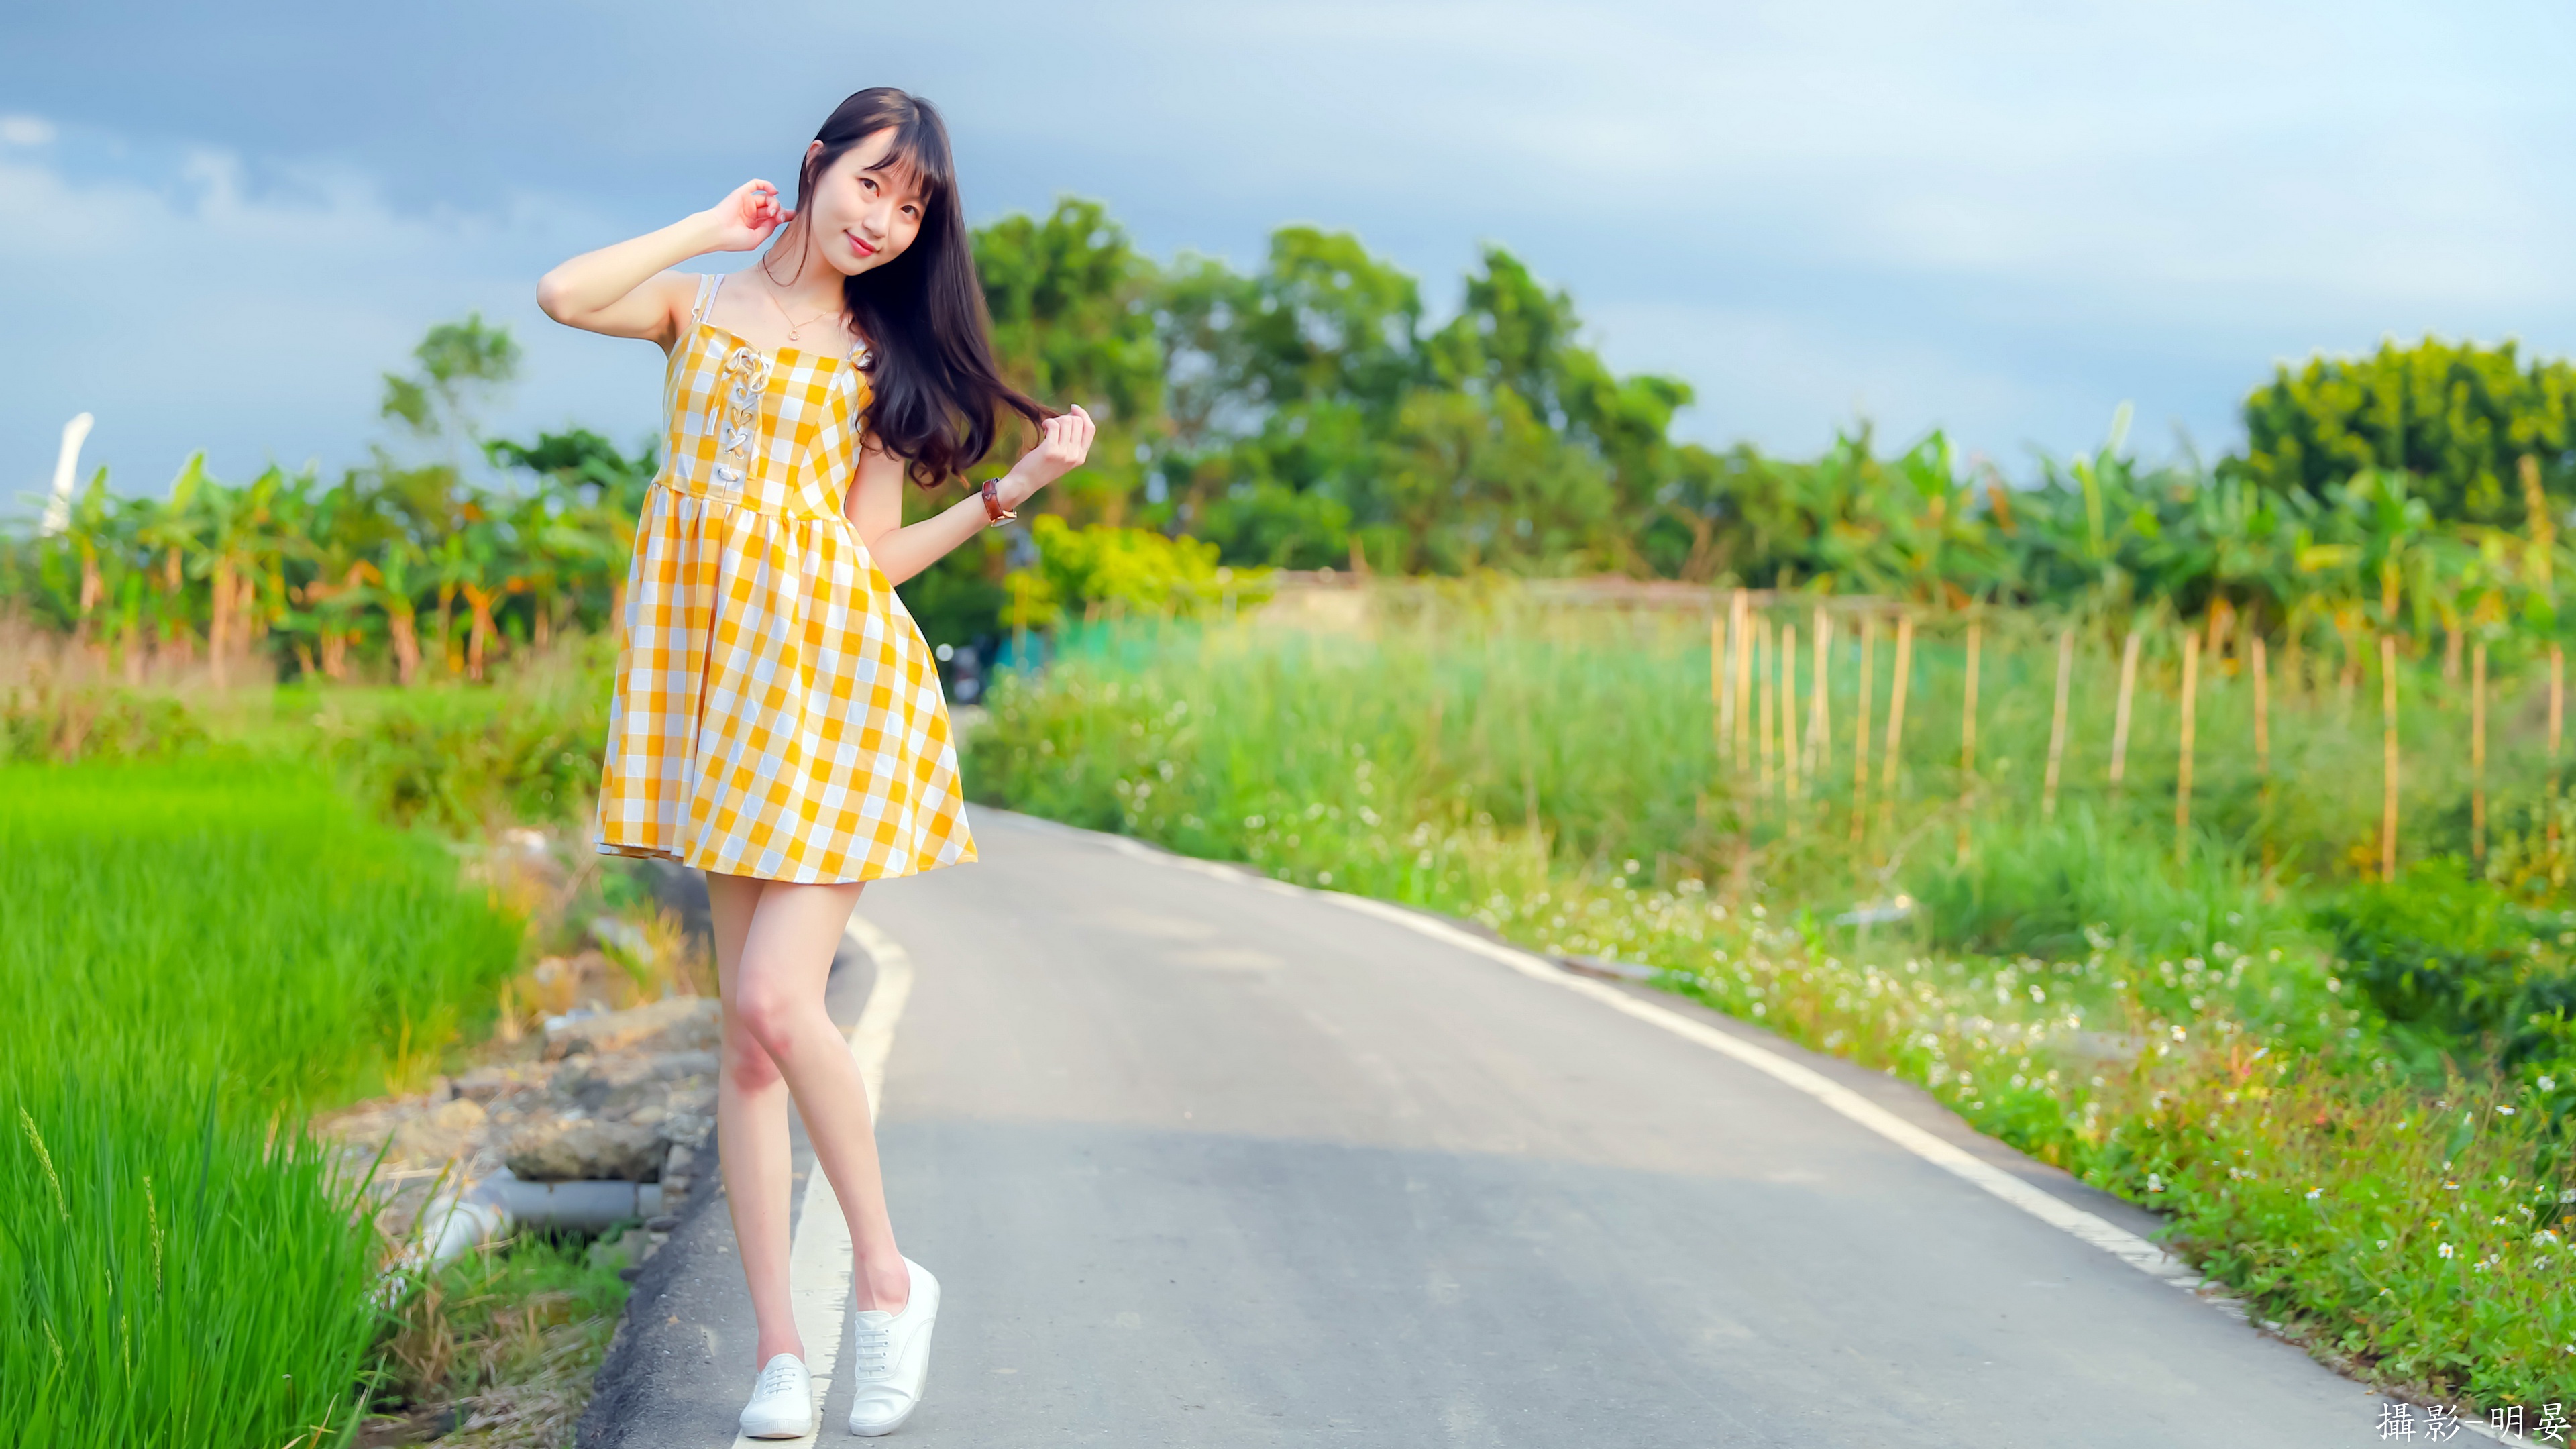 Asian Women Standing Model Women Outdoors Road Asphalt Dress Summer Dress Yellow Dress Yellow Clothi 3840x2160